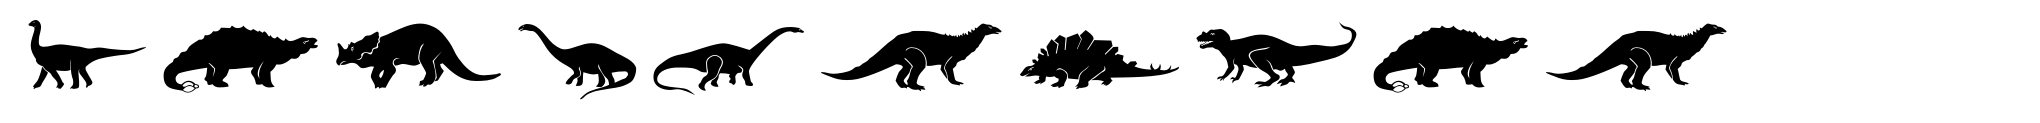 Dinosauria image